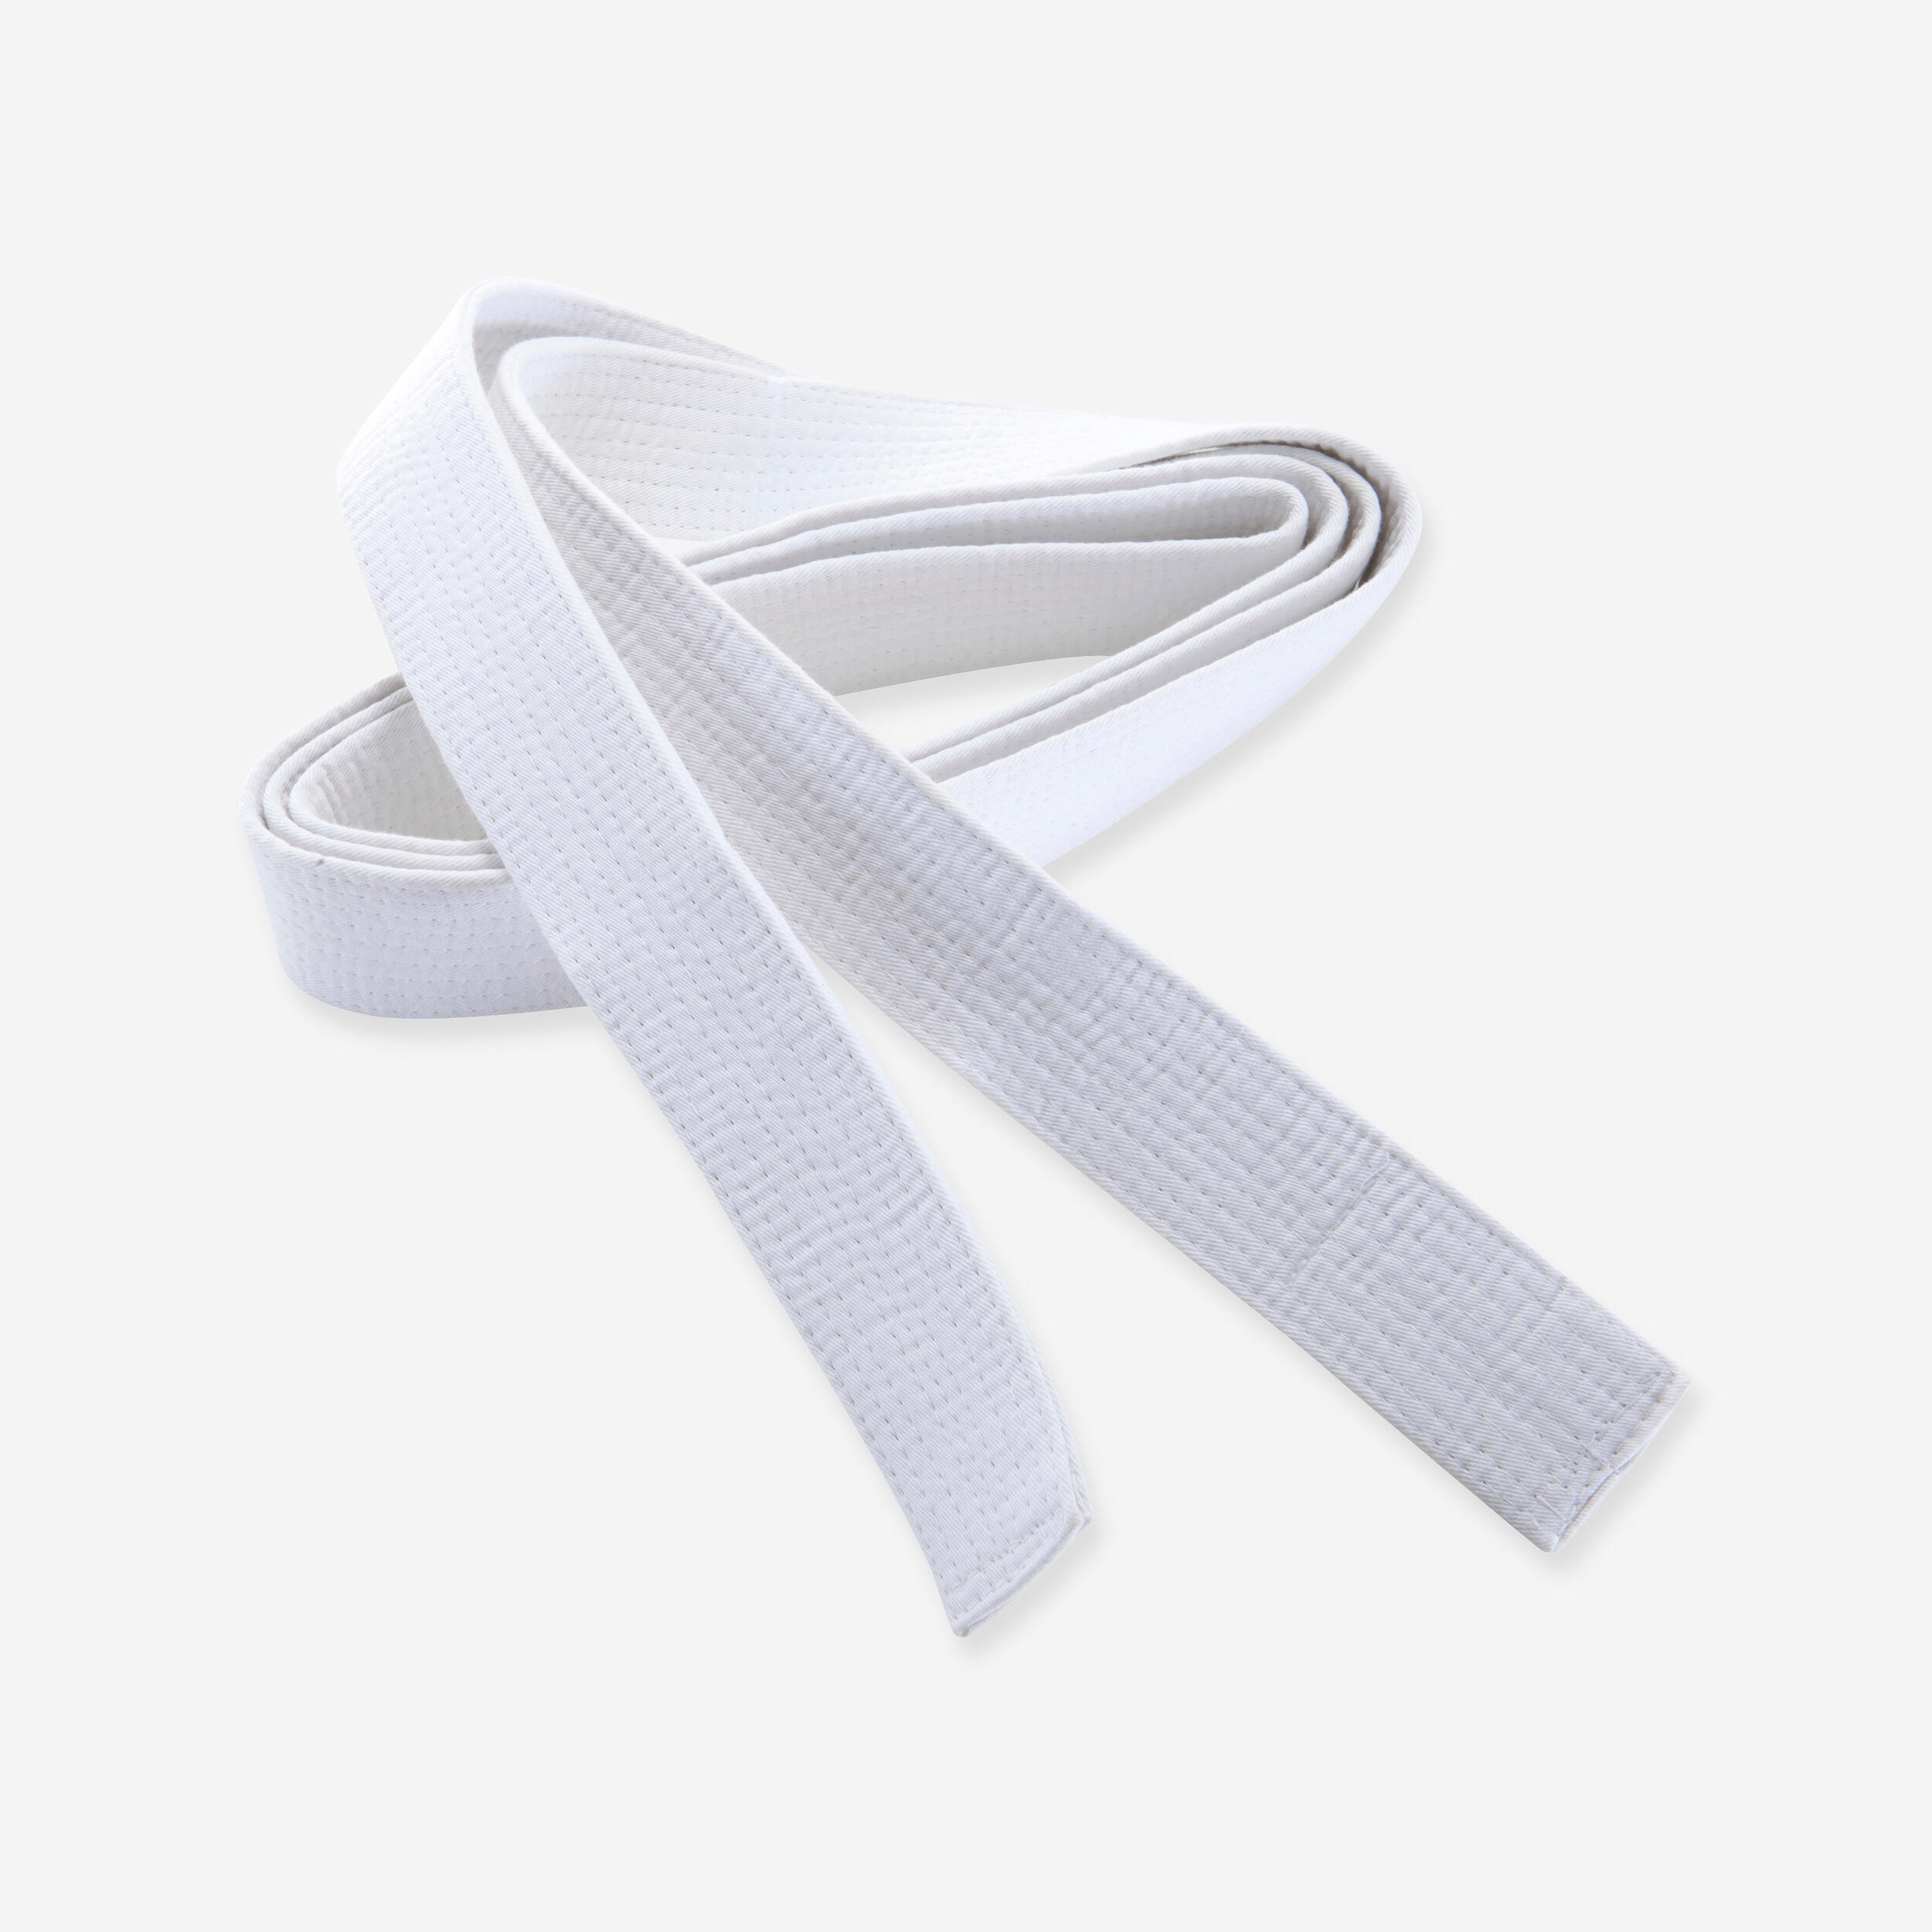 OUTSHOCK 3.1m Piqué Martial Arts Belt - White